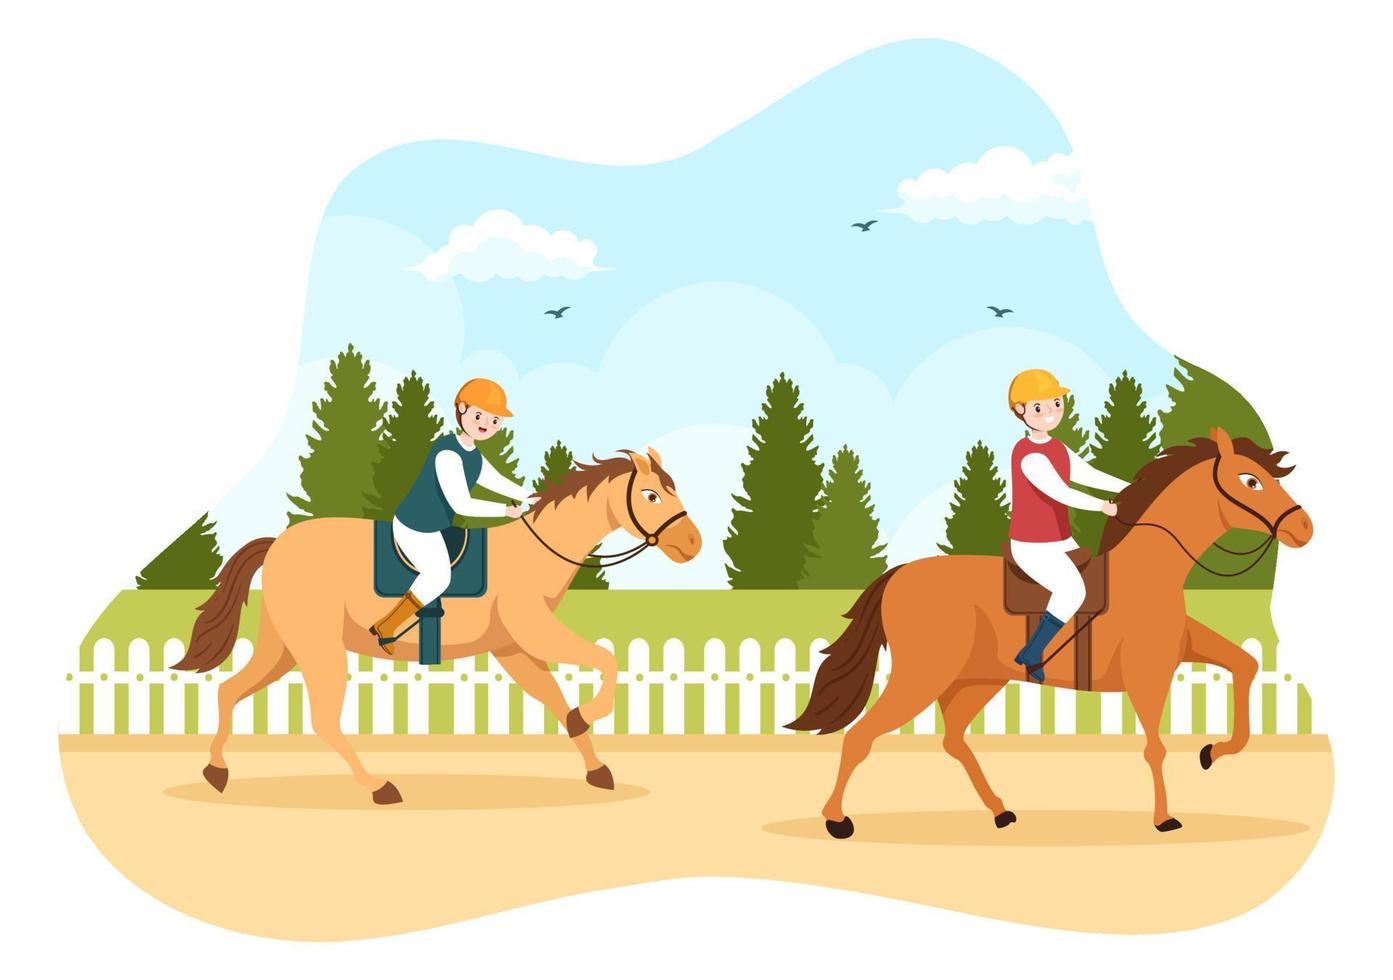 pferderennen-karikaturillustration mit charakteren, die wettbewerbssportmeisterschaften oder pferdesport auf der rennbahn durchführen vektor